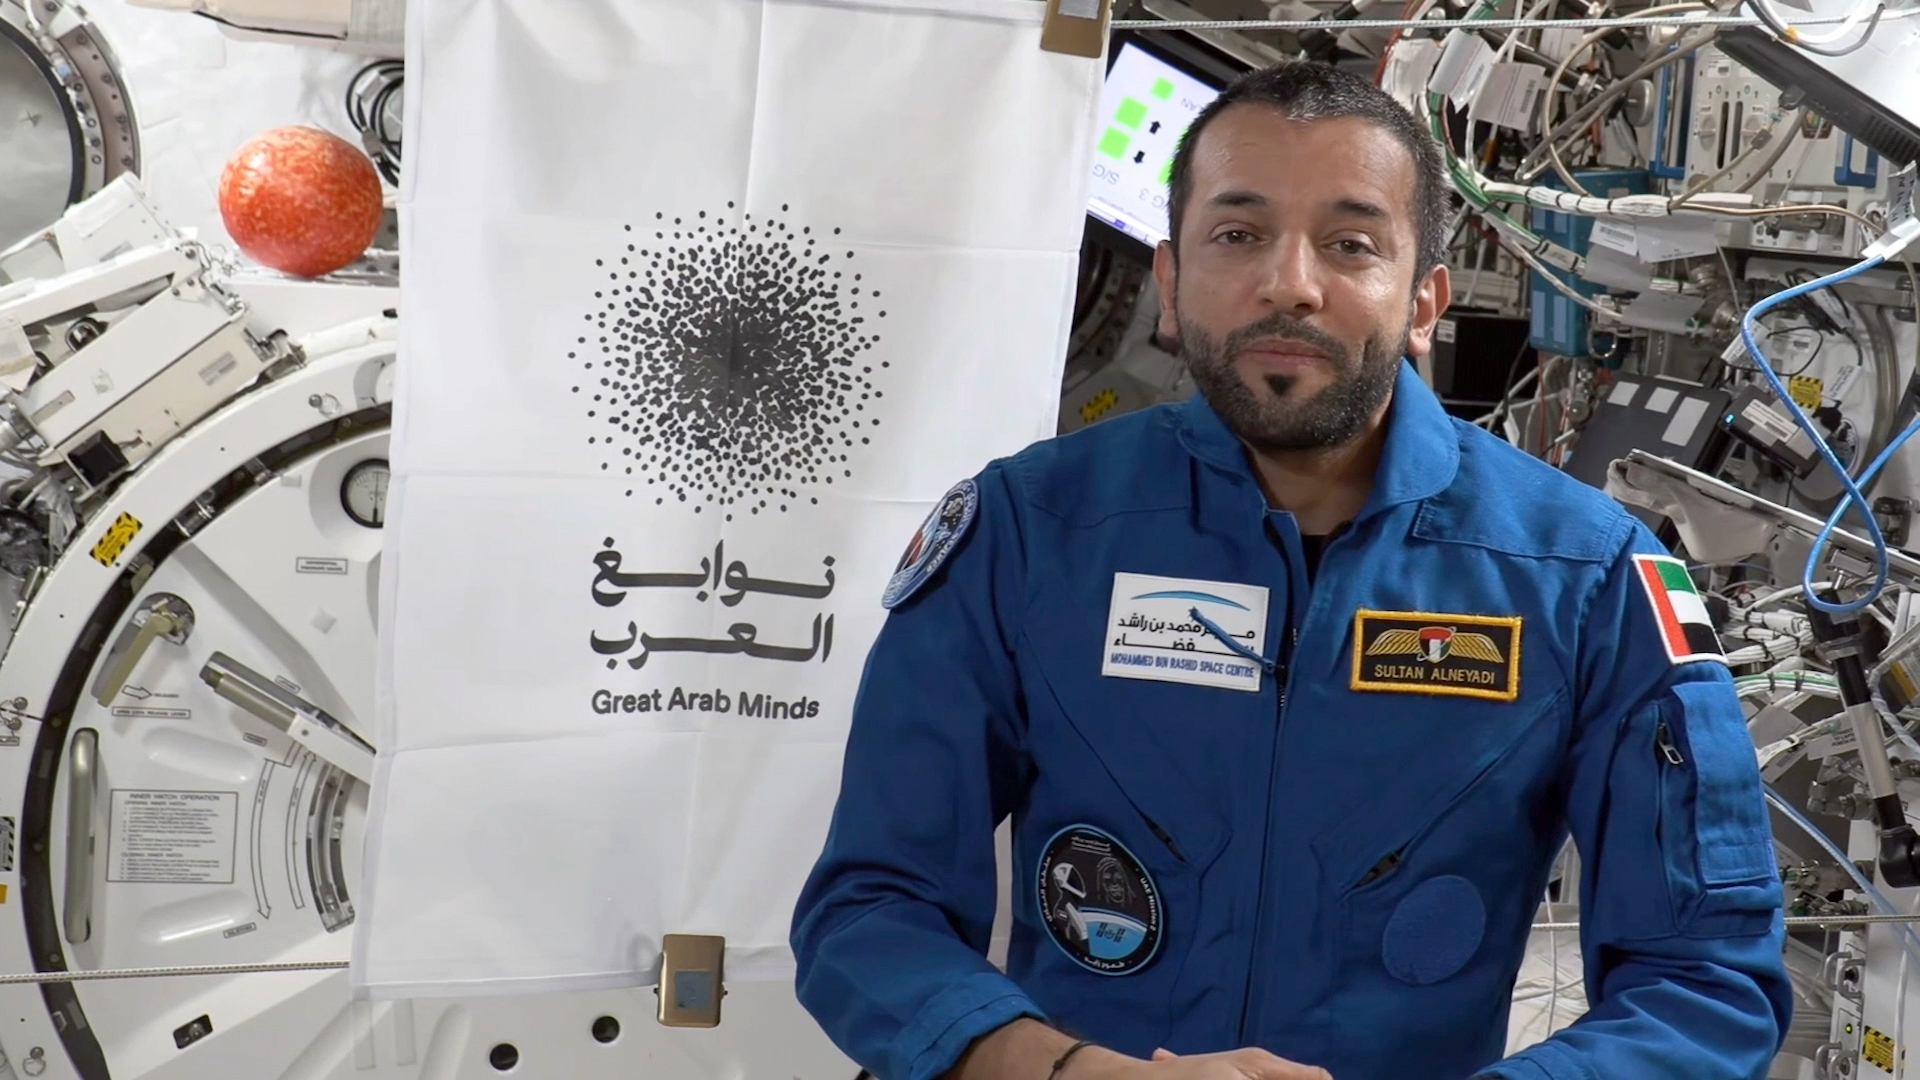 سلطان النيادي : مبادرة "نوابغ العرب " ترتقي بالمجال العلمي والمعرفي في العالم العربي
